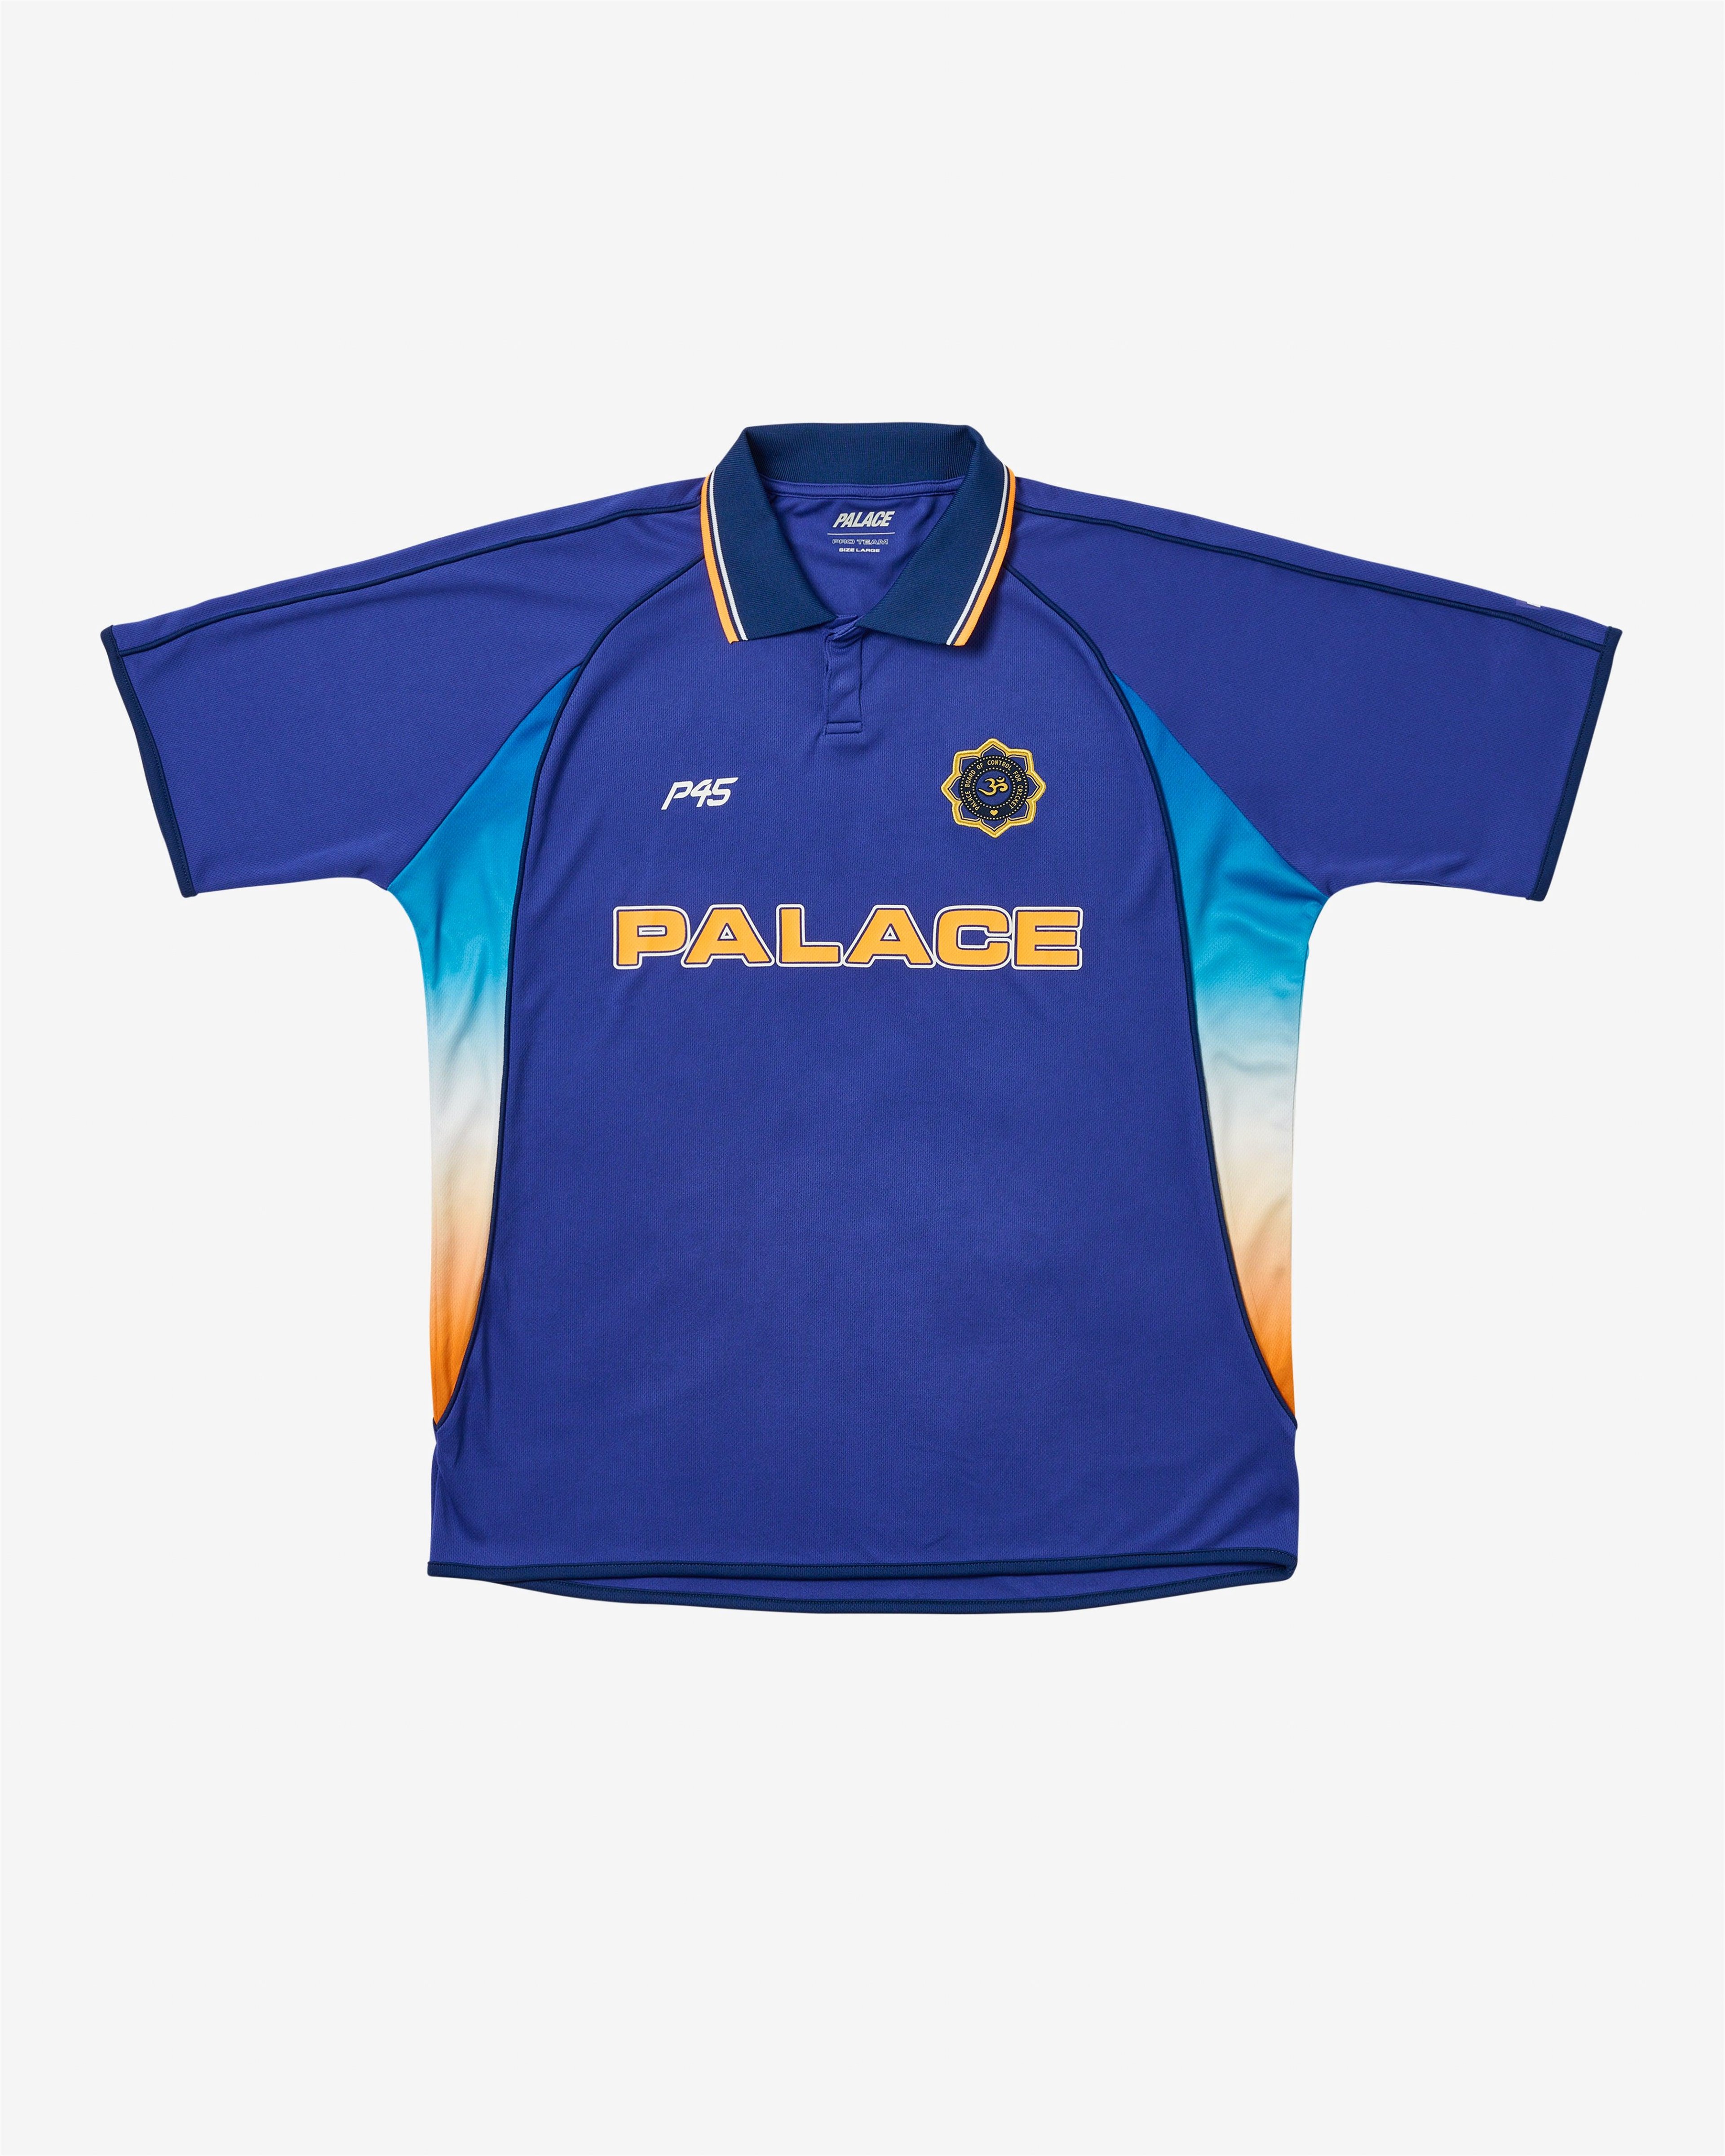 Palace - Men's Cricket Jersey - (Blue) by PALACE